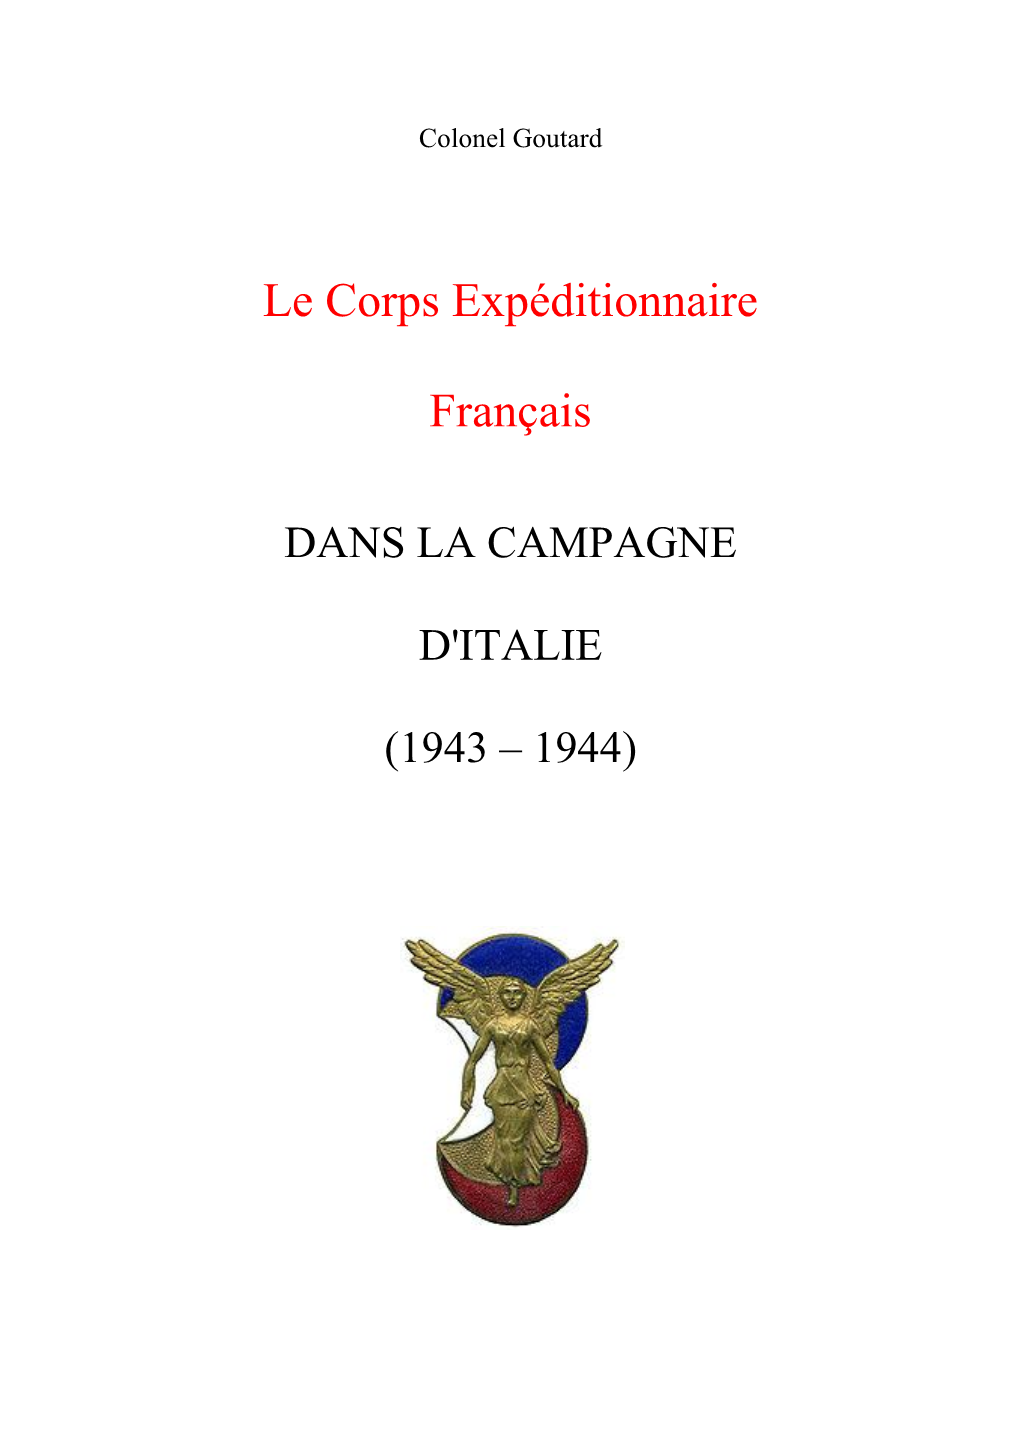 Le Corps Expéditionnaire Français